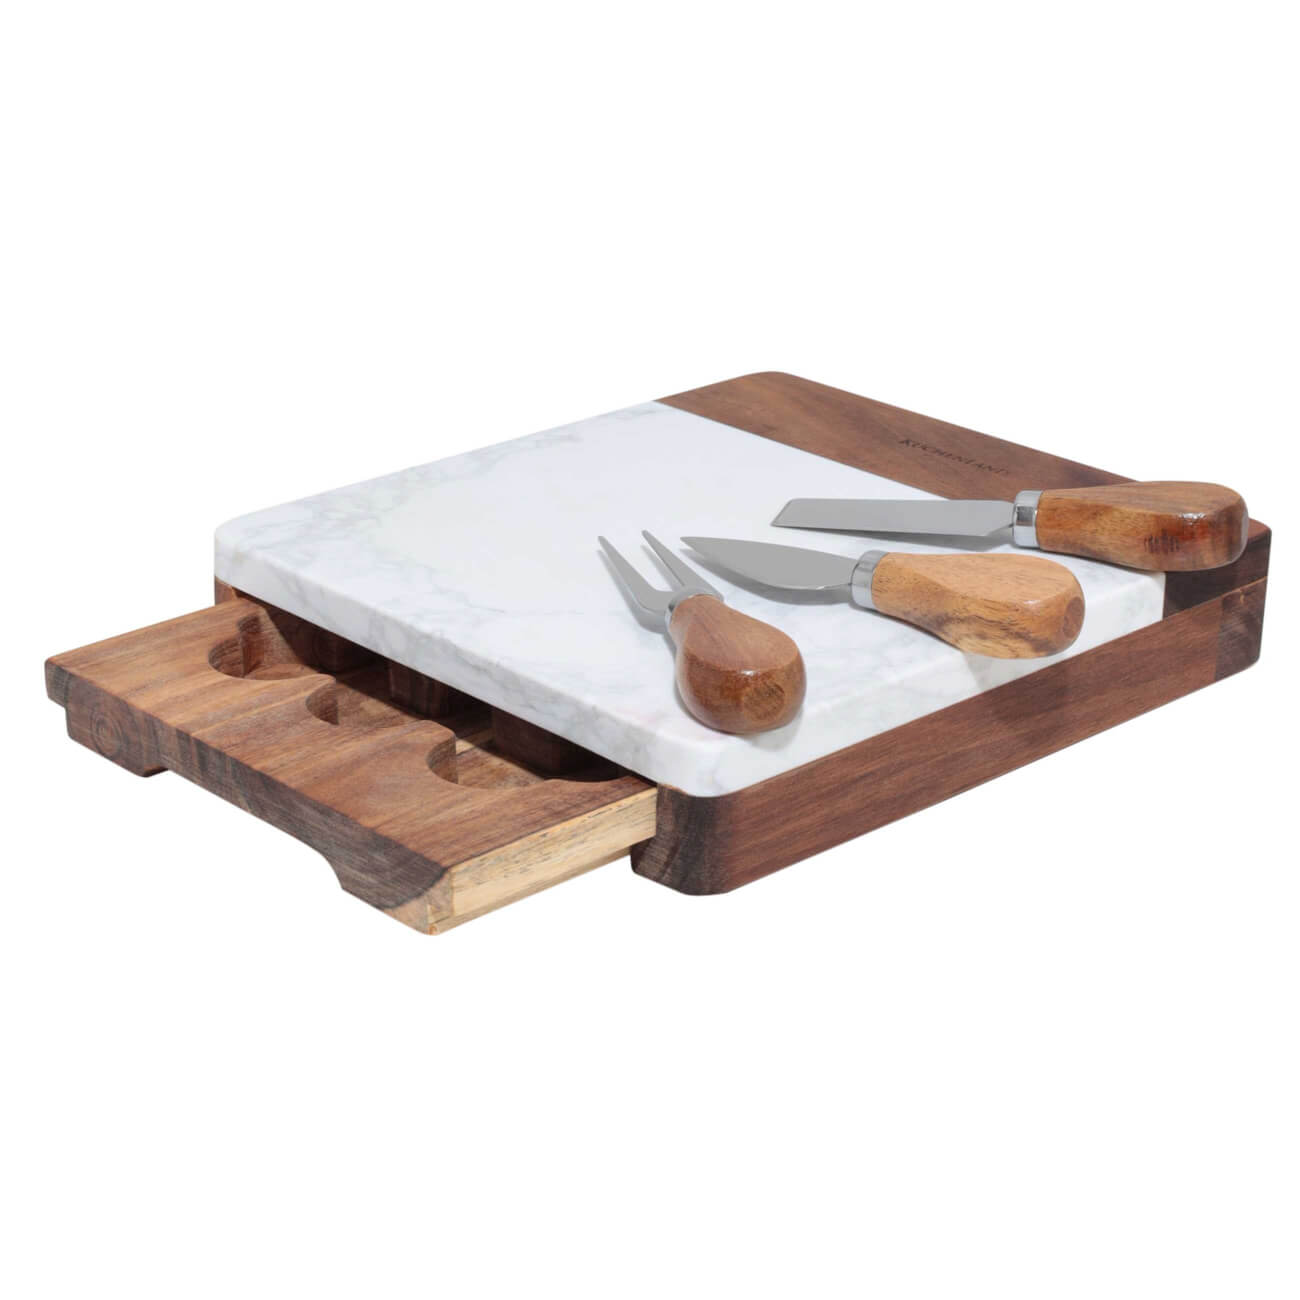 Набор для сыра, 4 пр, доска-ящик для хранения, мрамор/дерево, Marble wyatt доска и нож для подачи сыра